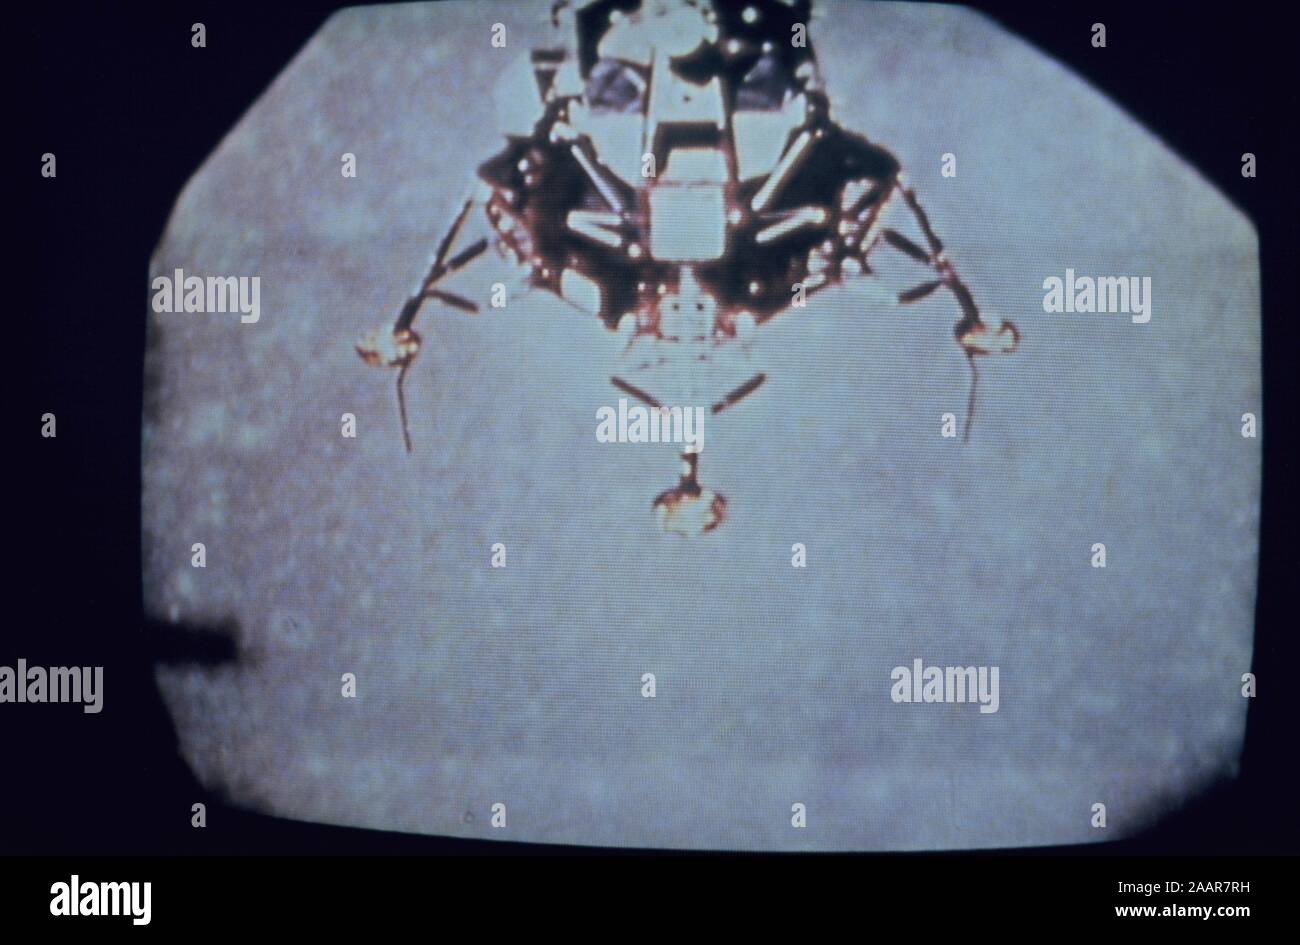 Teleclip - Apollo 11 Lunar Module Descent to Moon surface photo taken directly from TV screen circa 1969-1972, UK. Stock Photo